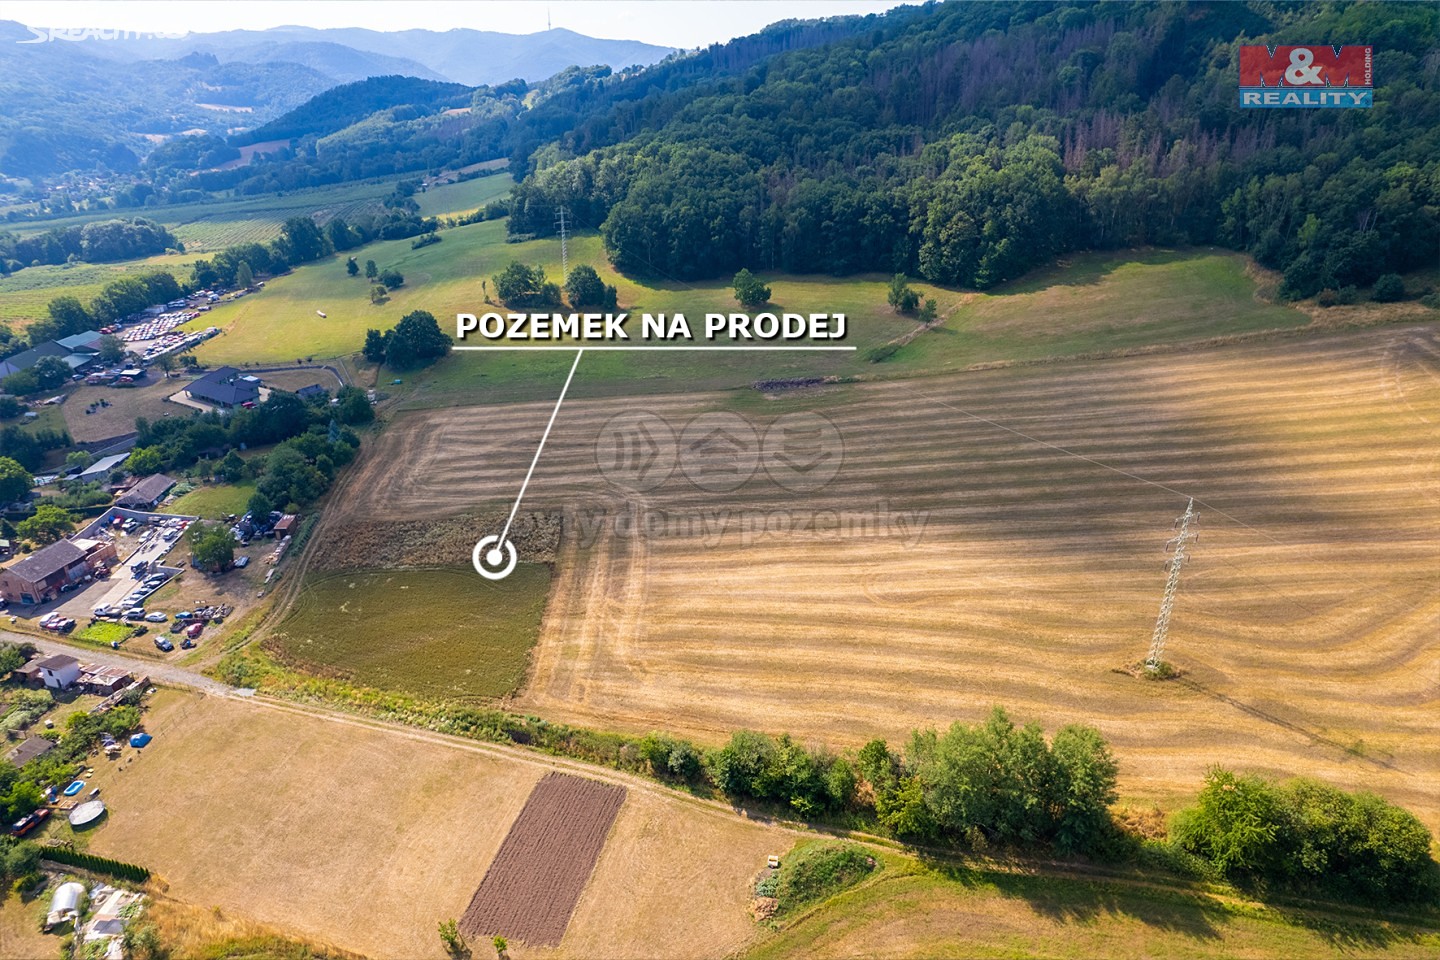 Prodej  stavebního pozemku 1 527 m², Malšovice, okres Děčín